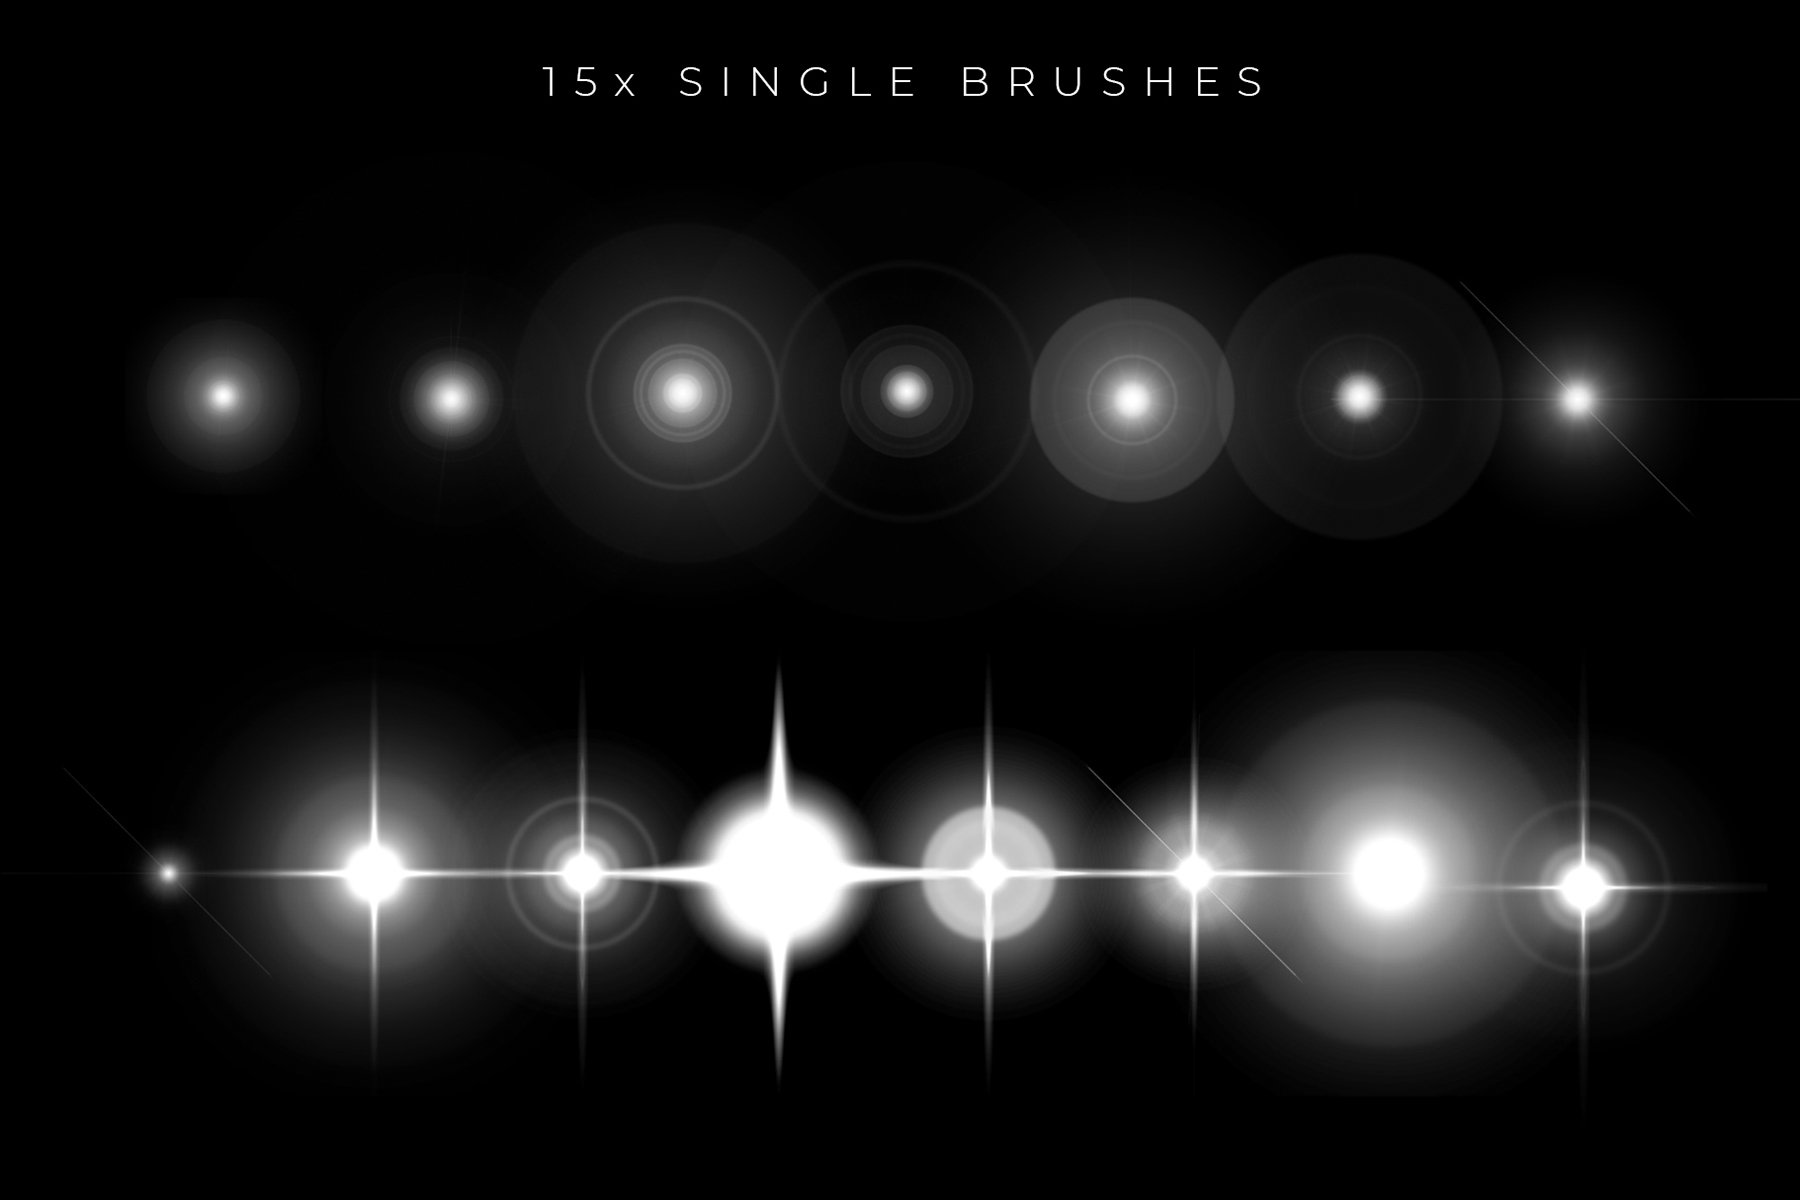 تحميل فرش نجوم لعشاق التصميم 20-Star-brushes-ad-2